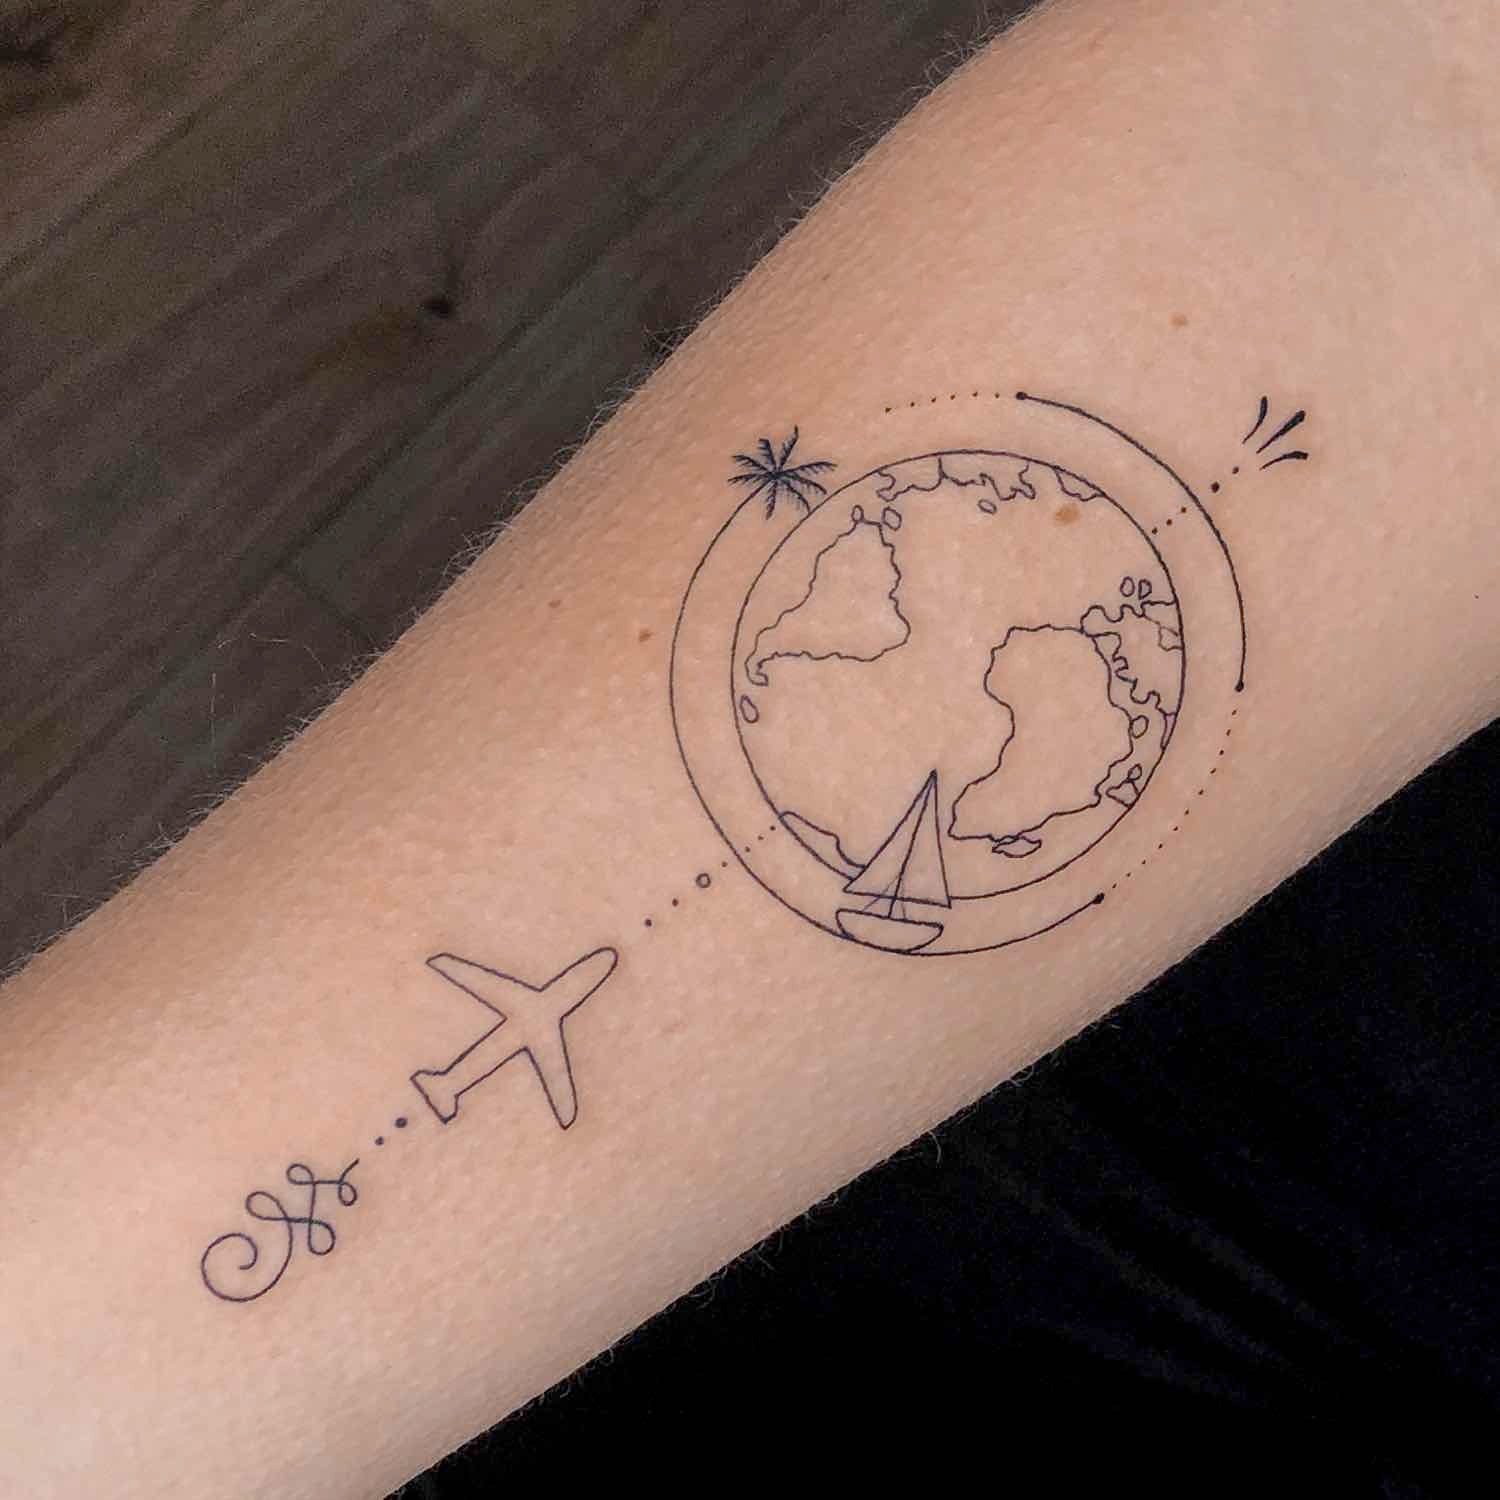 Tatuajes en el antebrazo: las mejores ideas y técnicas